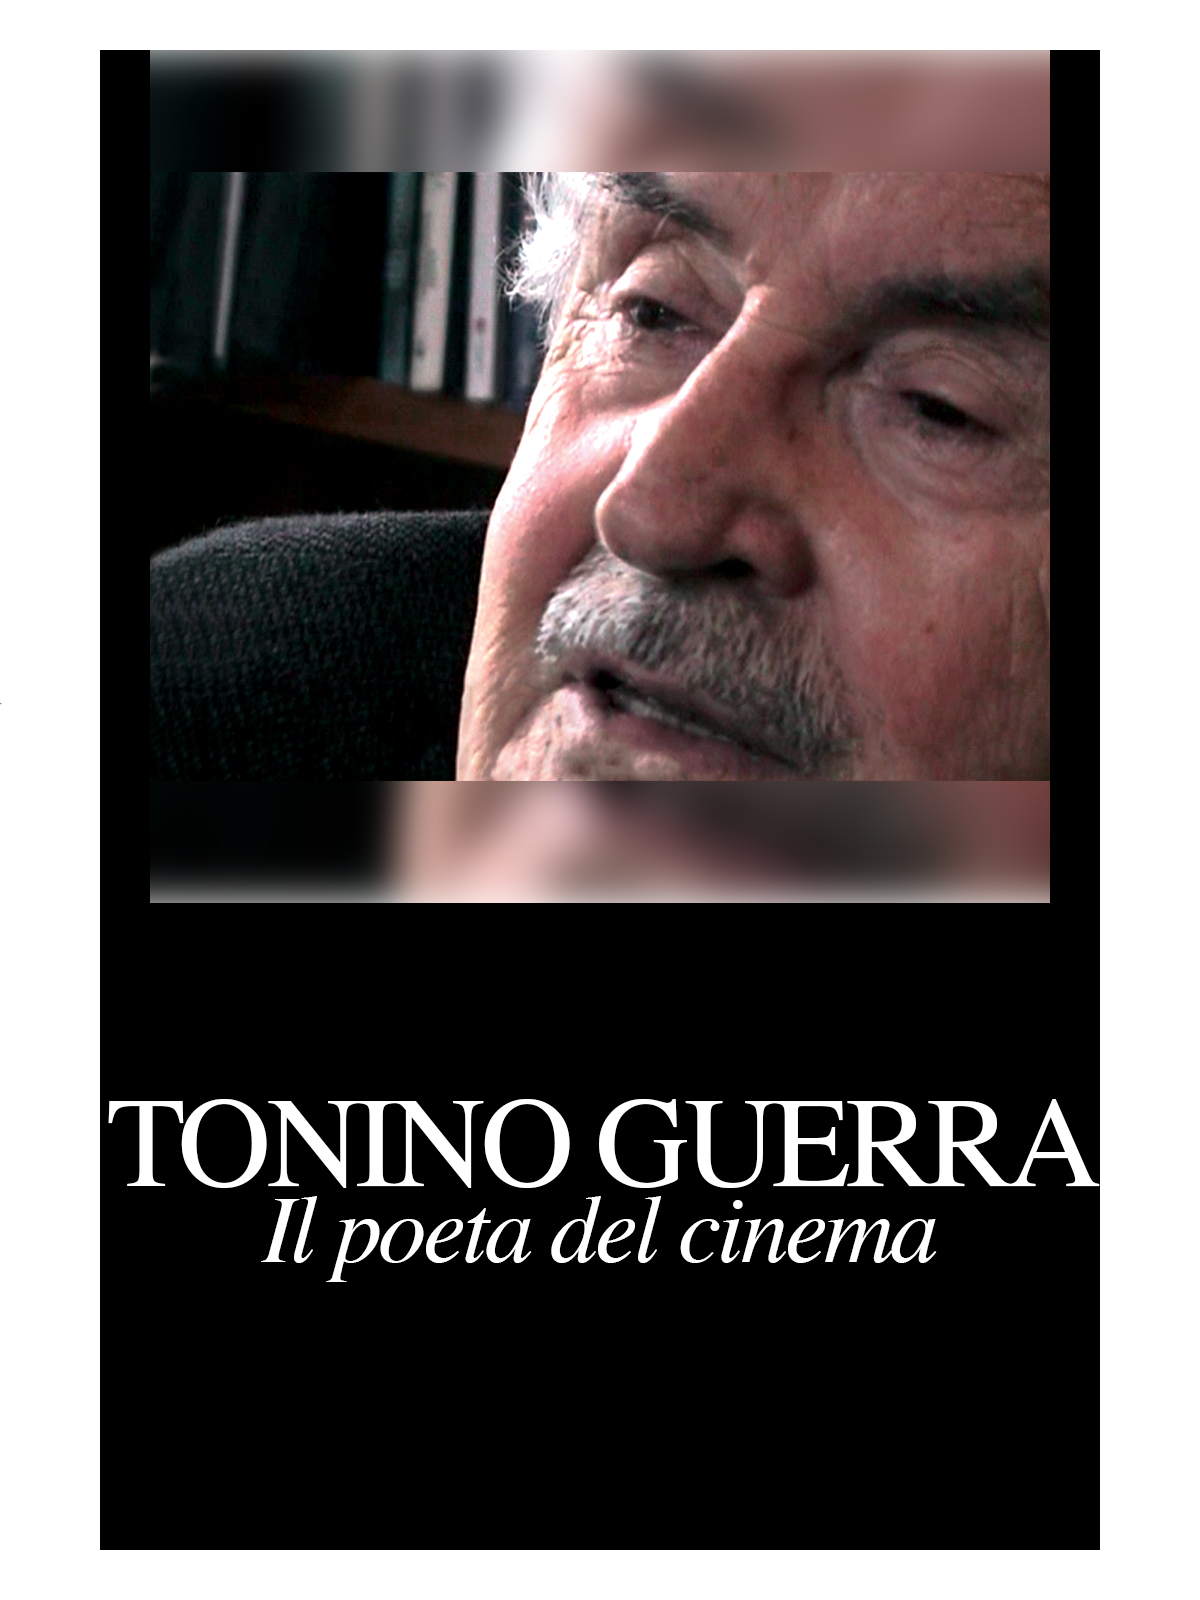 Tonino Guerra: Cinema’s Poet